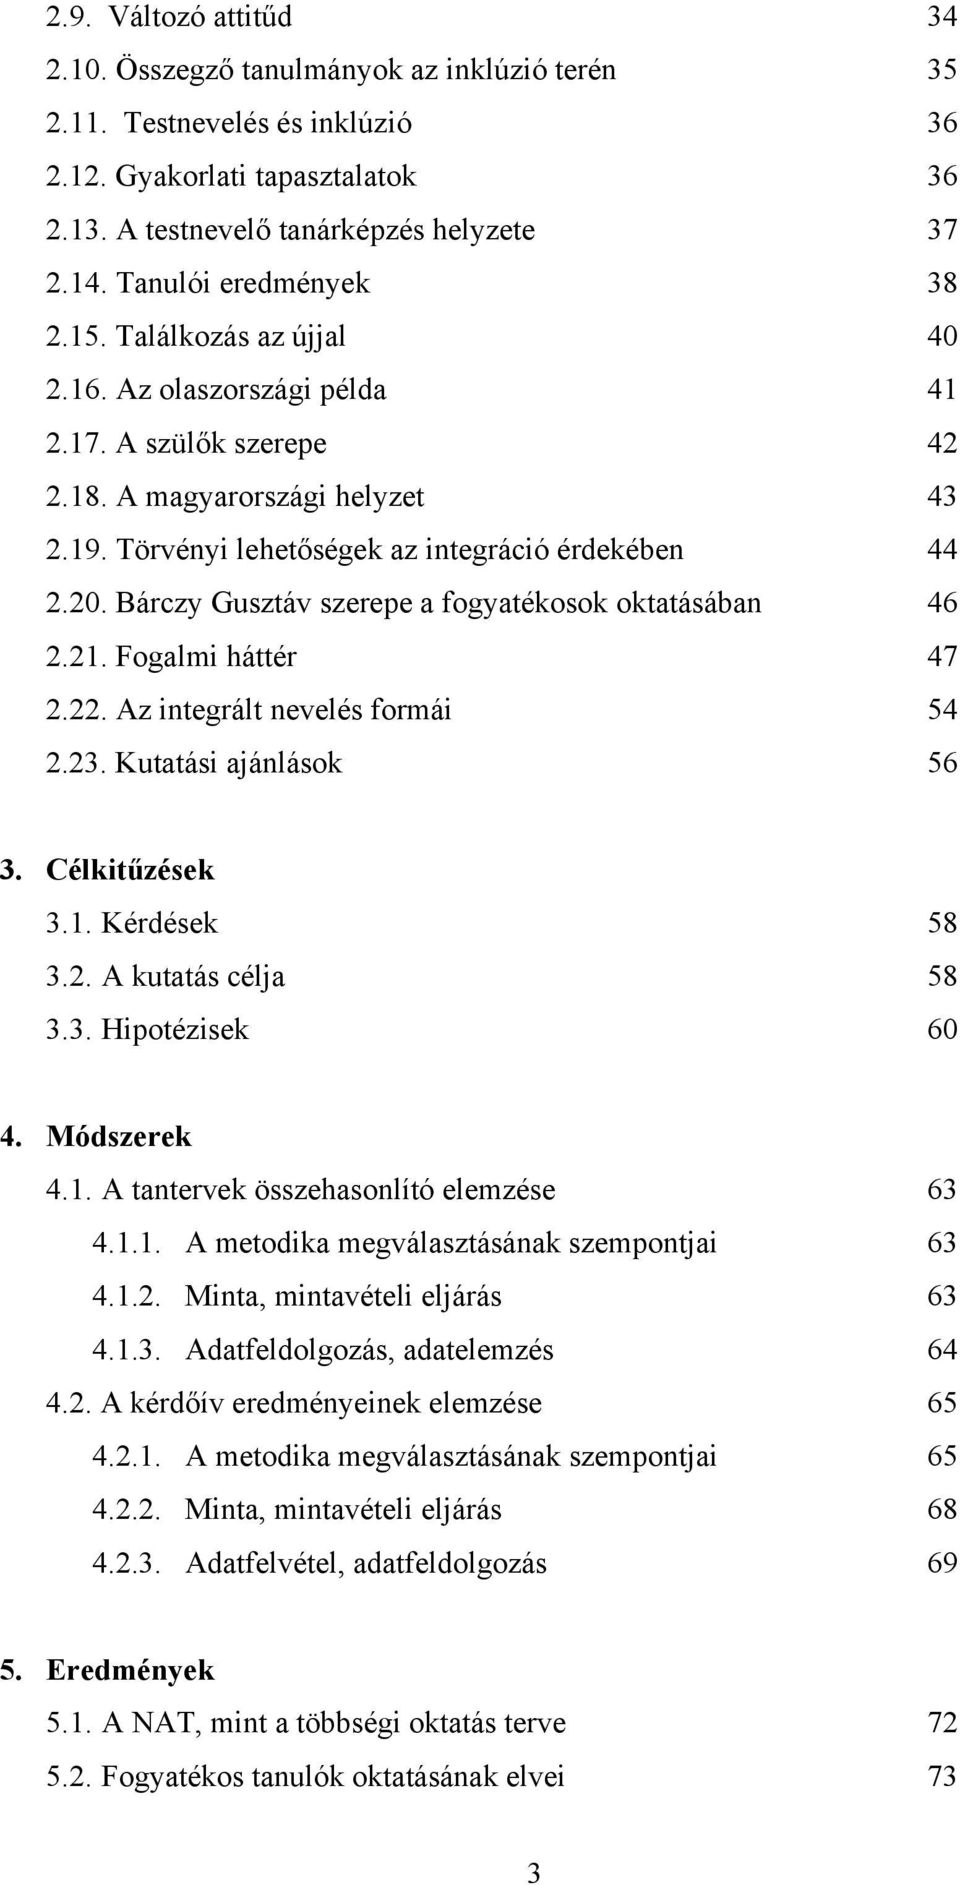 Bárczy Gusztáv szerepe a fogyatékosok oktatásában 46 2.21. Fogalmi háttér 47 2.22. Az integrált nevelés formái 54 2.23. Kutatási ajánlások 56 3. Célkitűzések 3.1. Kérdések 58 3.2. A kutatás célja 58 3.